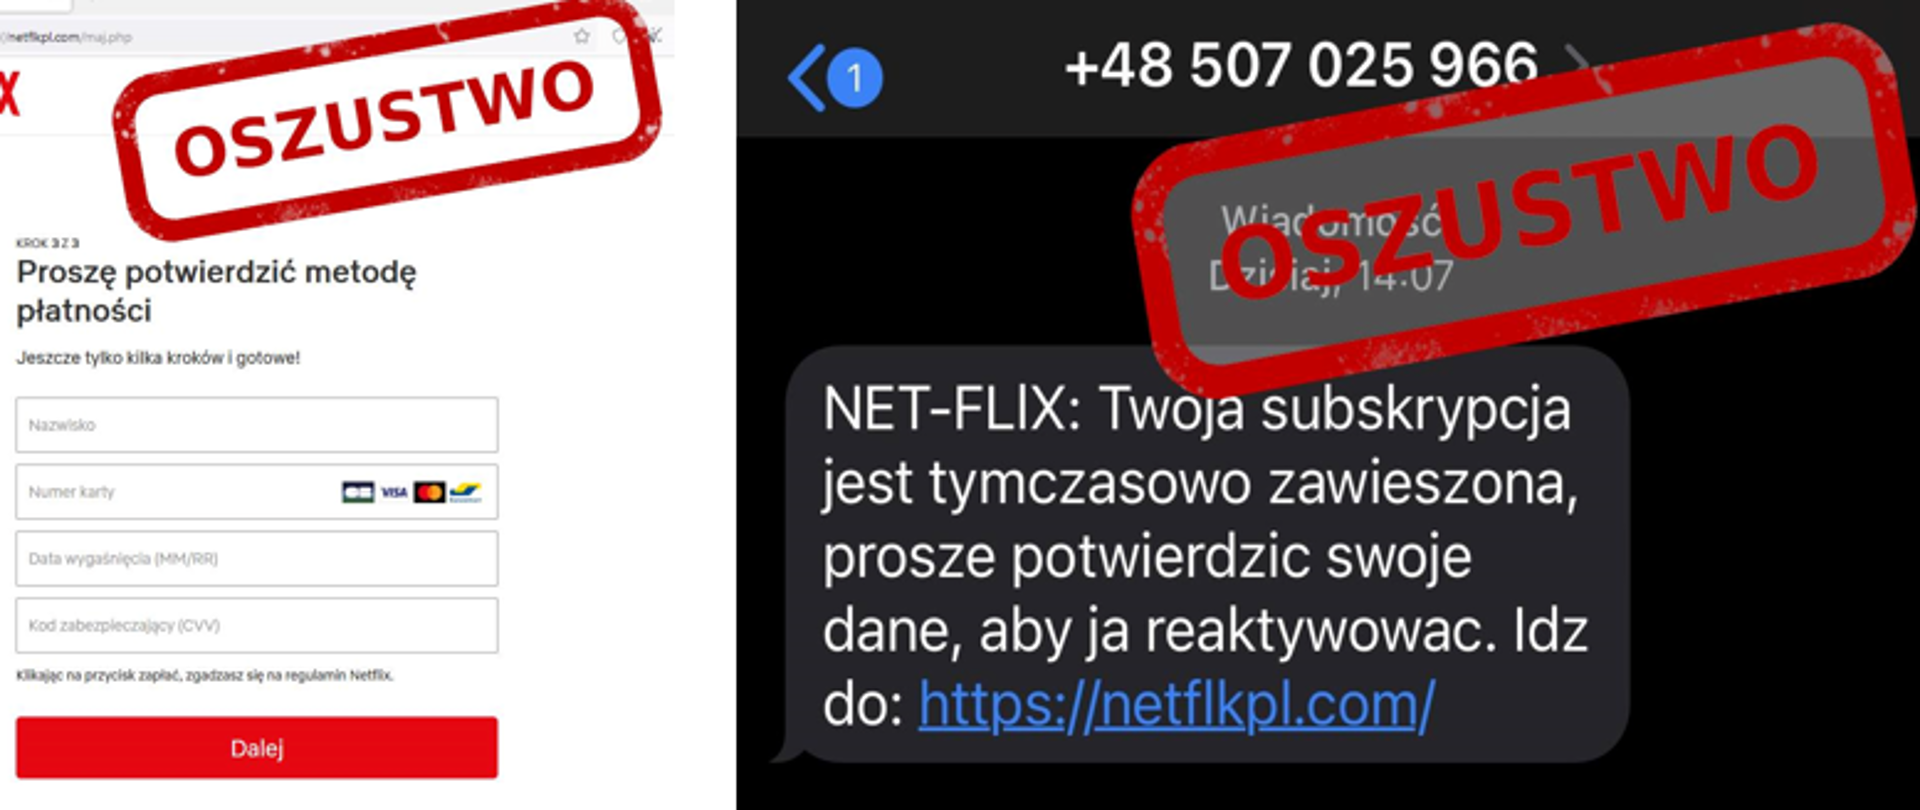 Zdjęcie fałszywej wiadomości SMS o treści NET-FLIX: Twoja subskrypcja jest tymczasowo zawieszona, proszę potwierdzić swoje dane aby ją reaktywować. Idź do: netflkpl.com